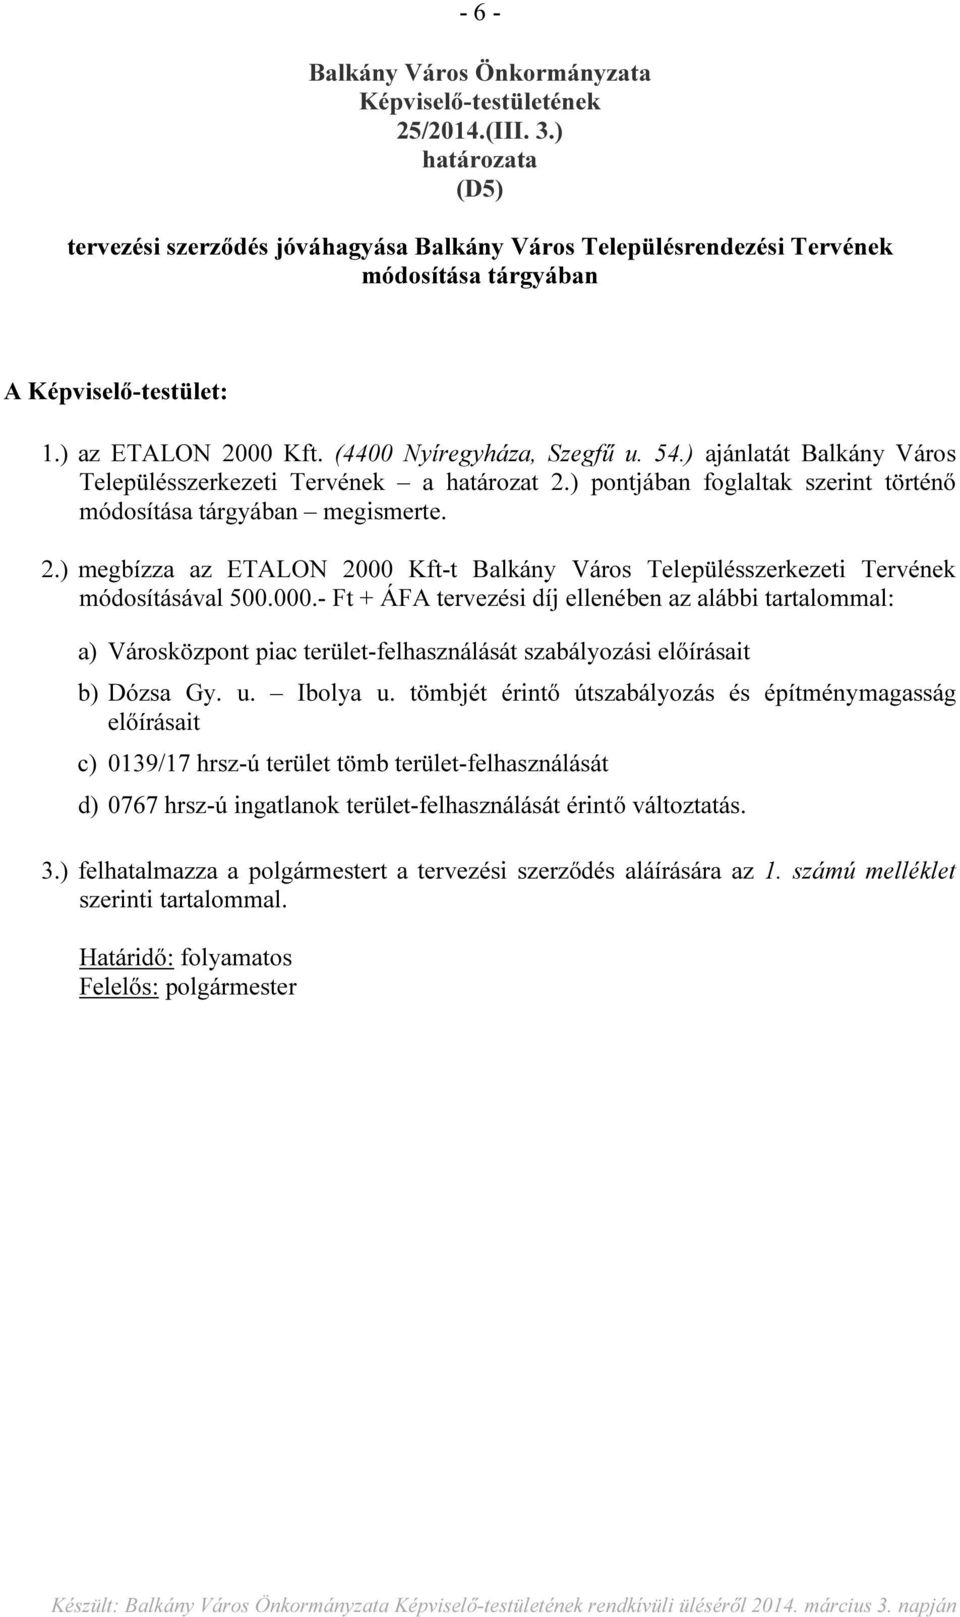 ) ajánlatát Balkány Város Településszerkezeti Tervének a határozat 2.) pontjában foglaltak szerint történő módosítása tárgyában megismerte. 2.) megbízza az ETALON 2000 Kft-t Balkány Város Településszerkezeti Tervének módosításával 500.